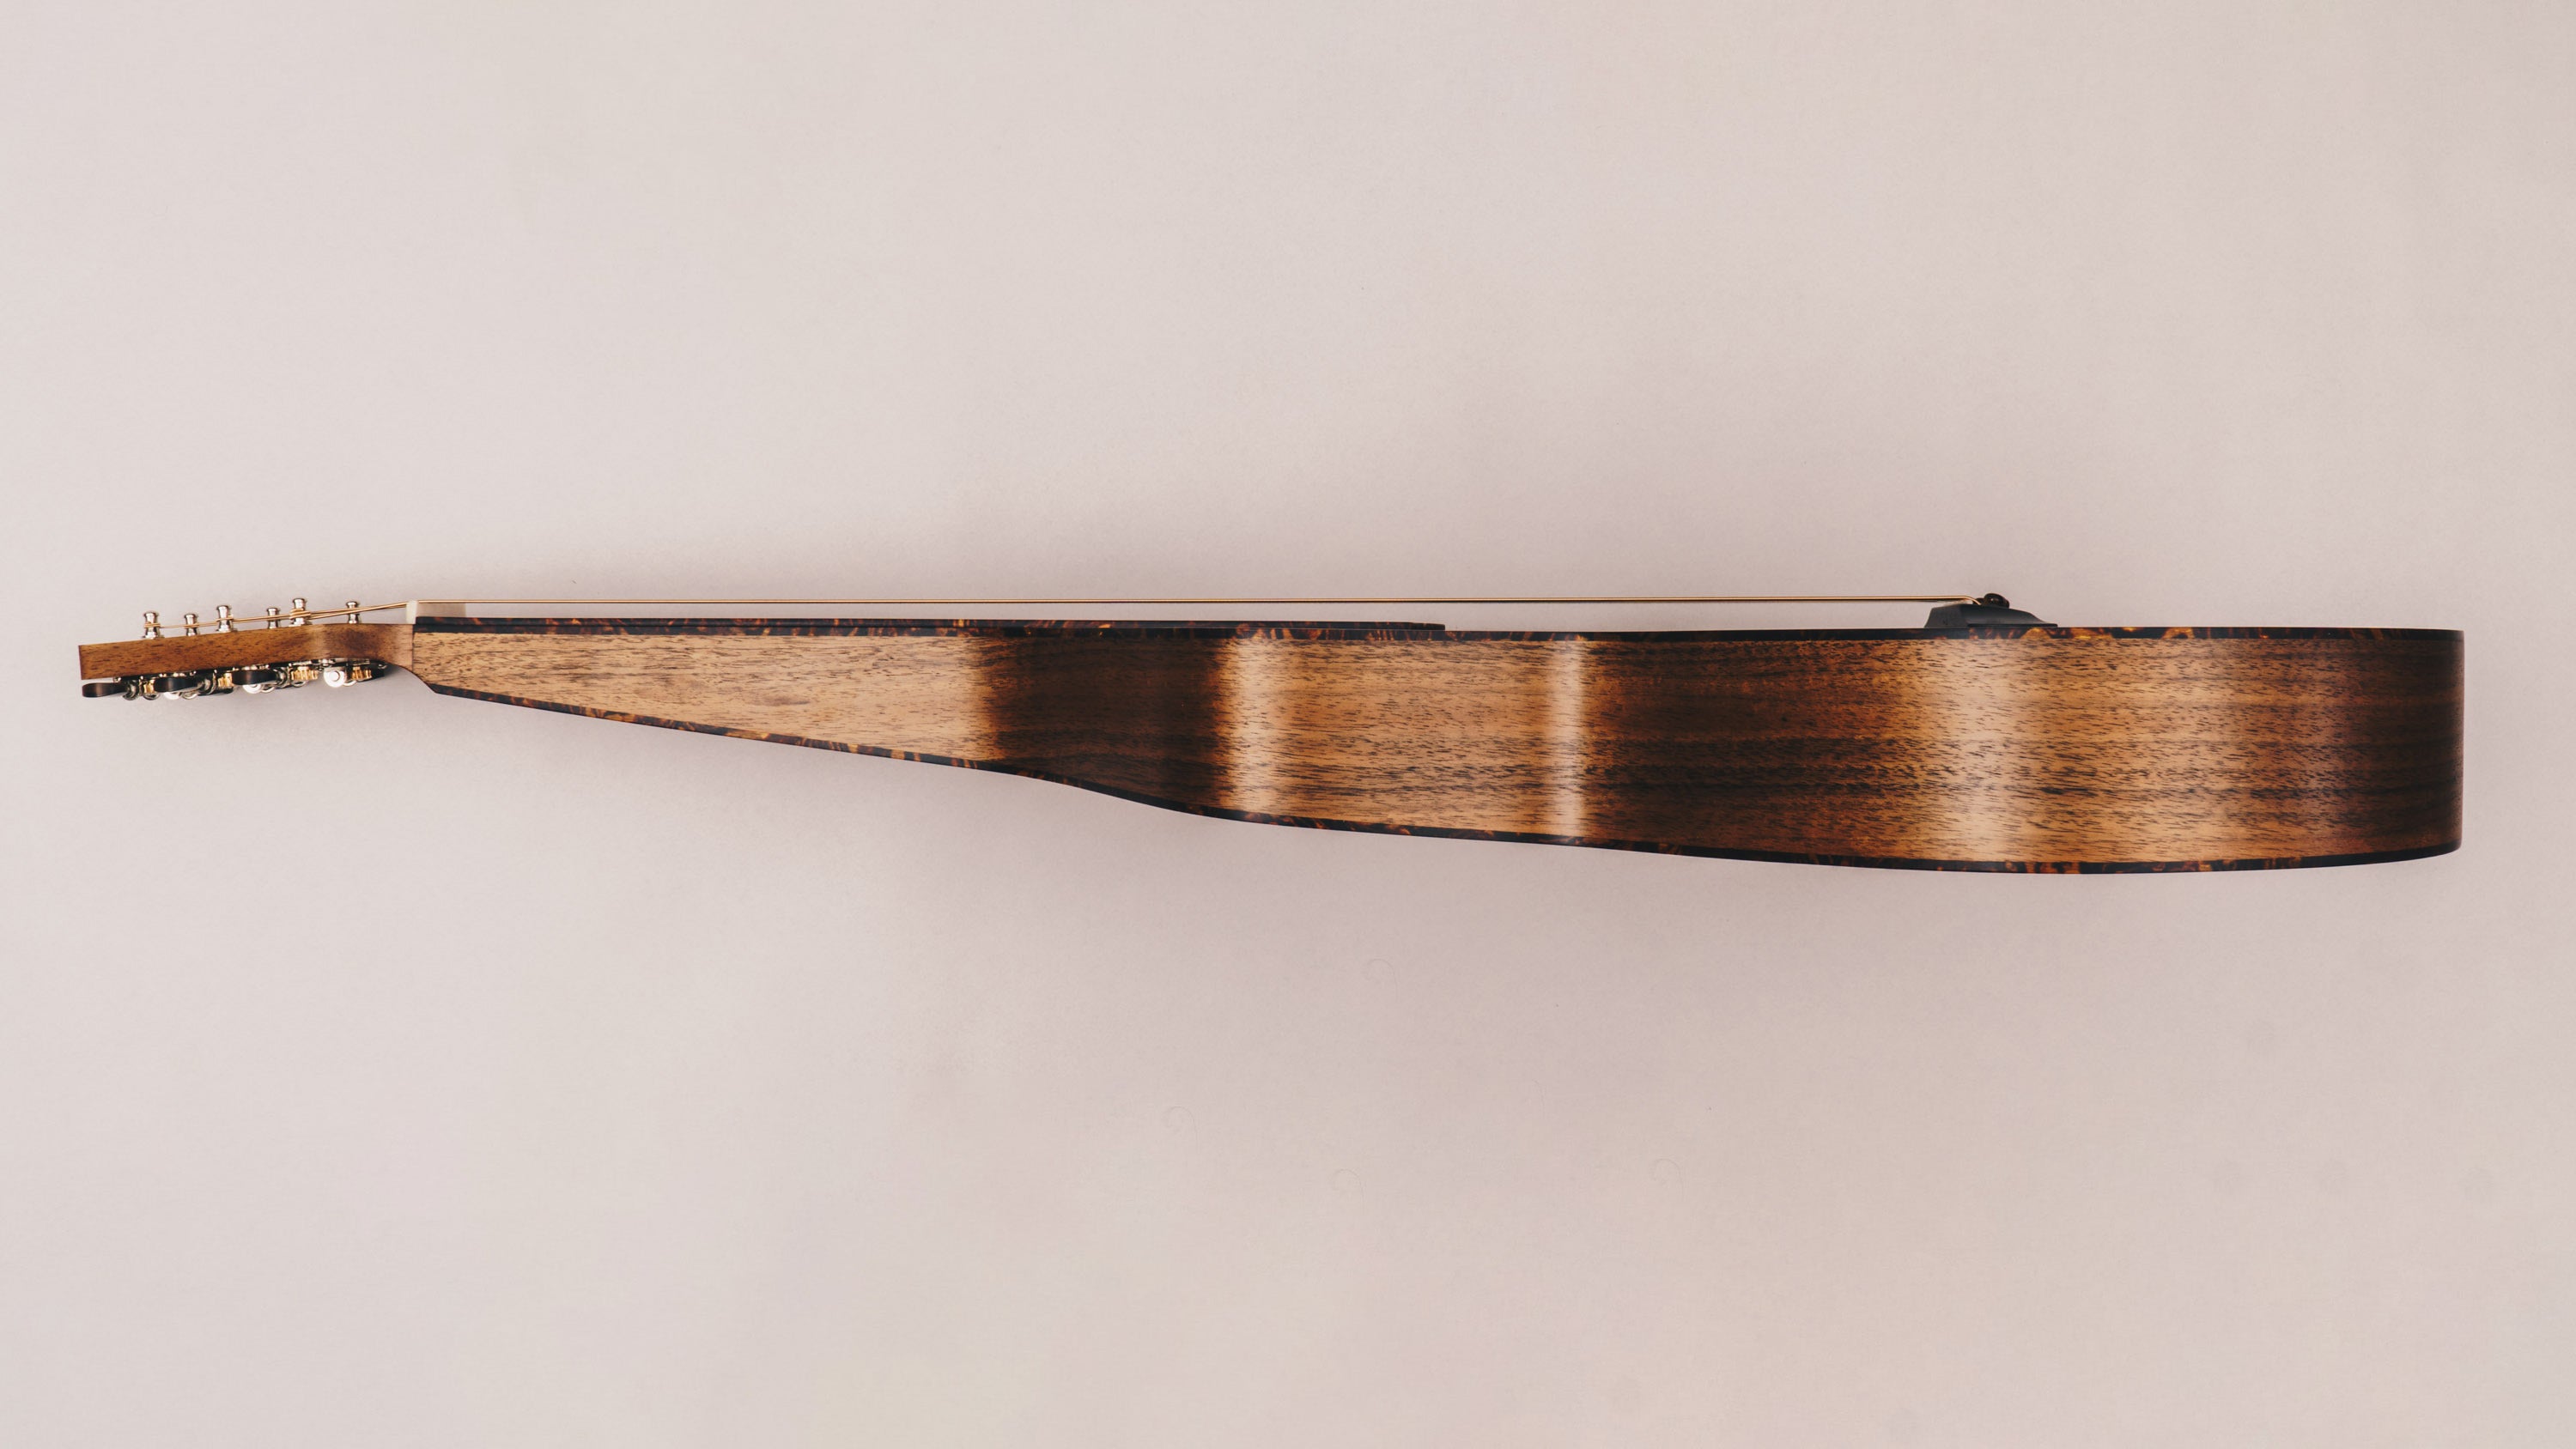 Style 2 Weissenborn guitar featuring tortoiseshell binding, tuning machines and bridge pins by Richard Wilson.